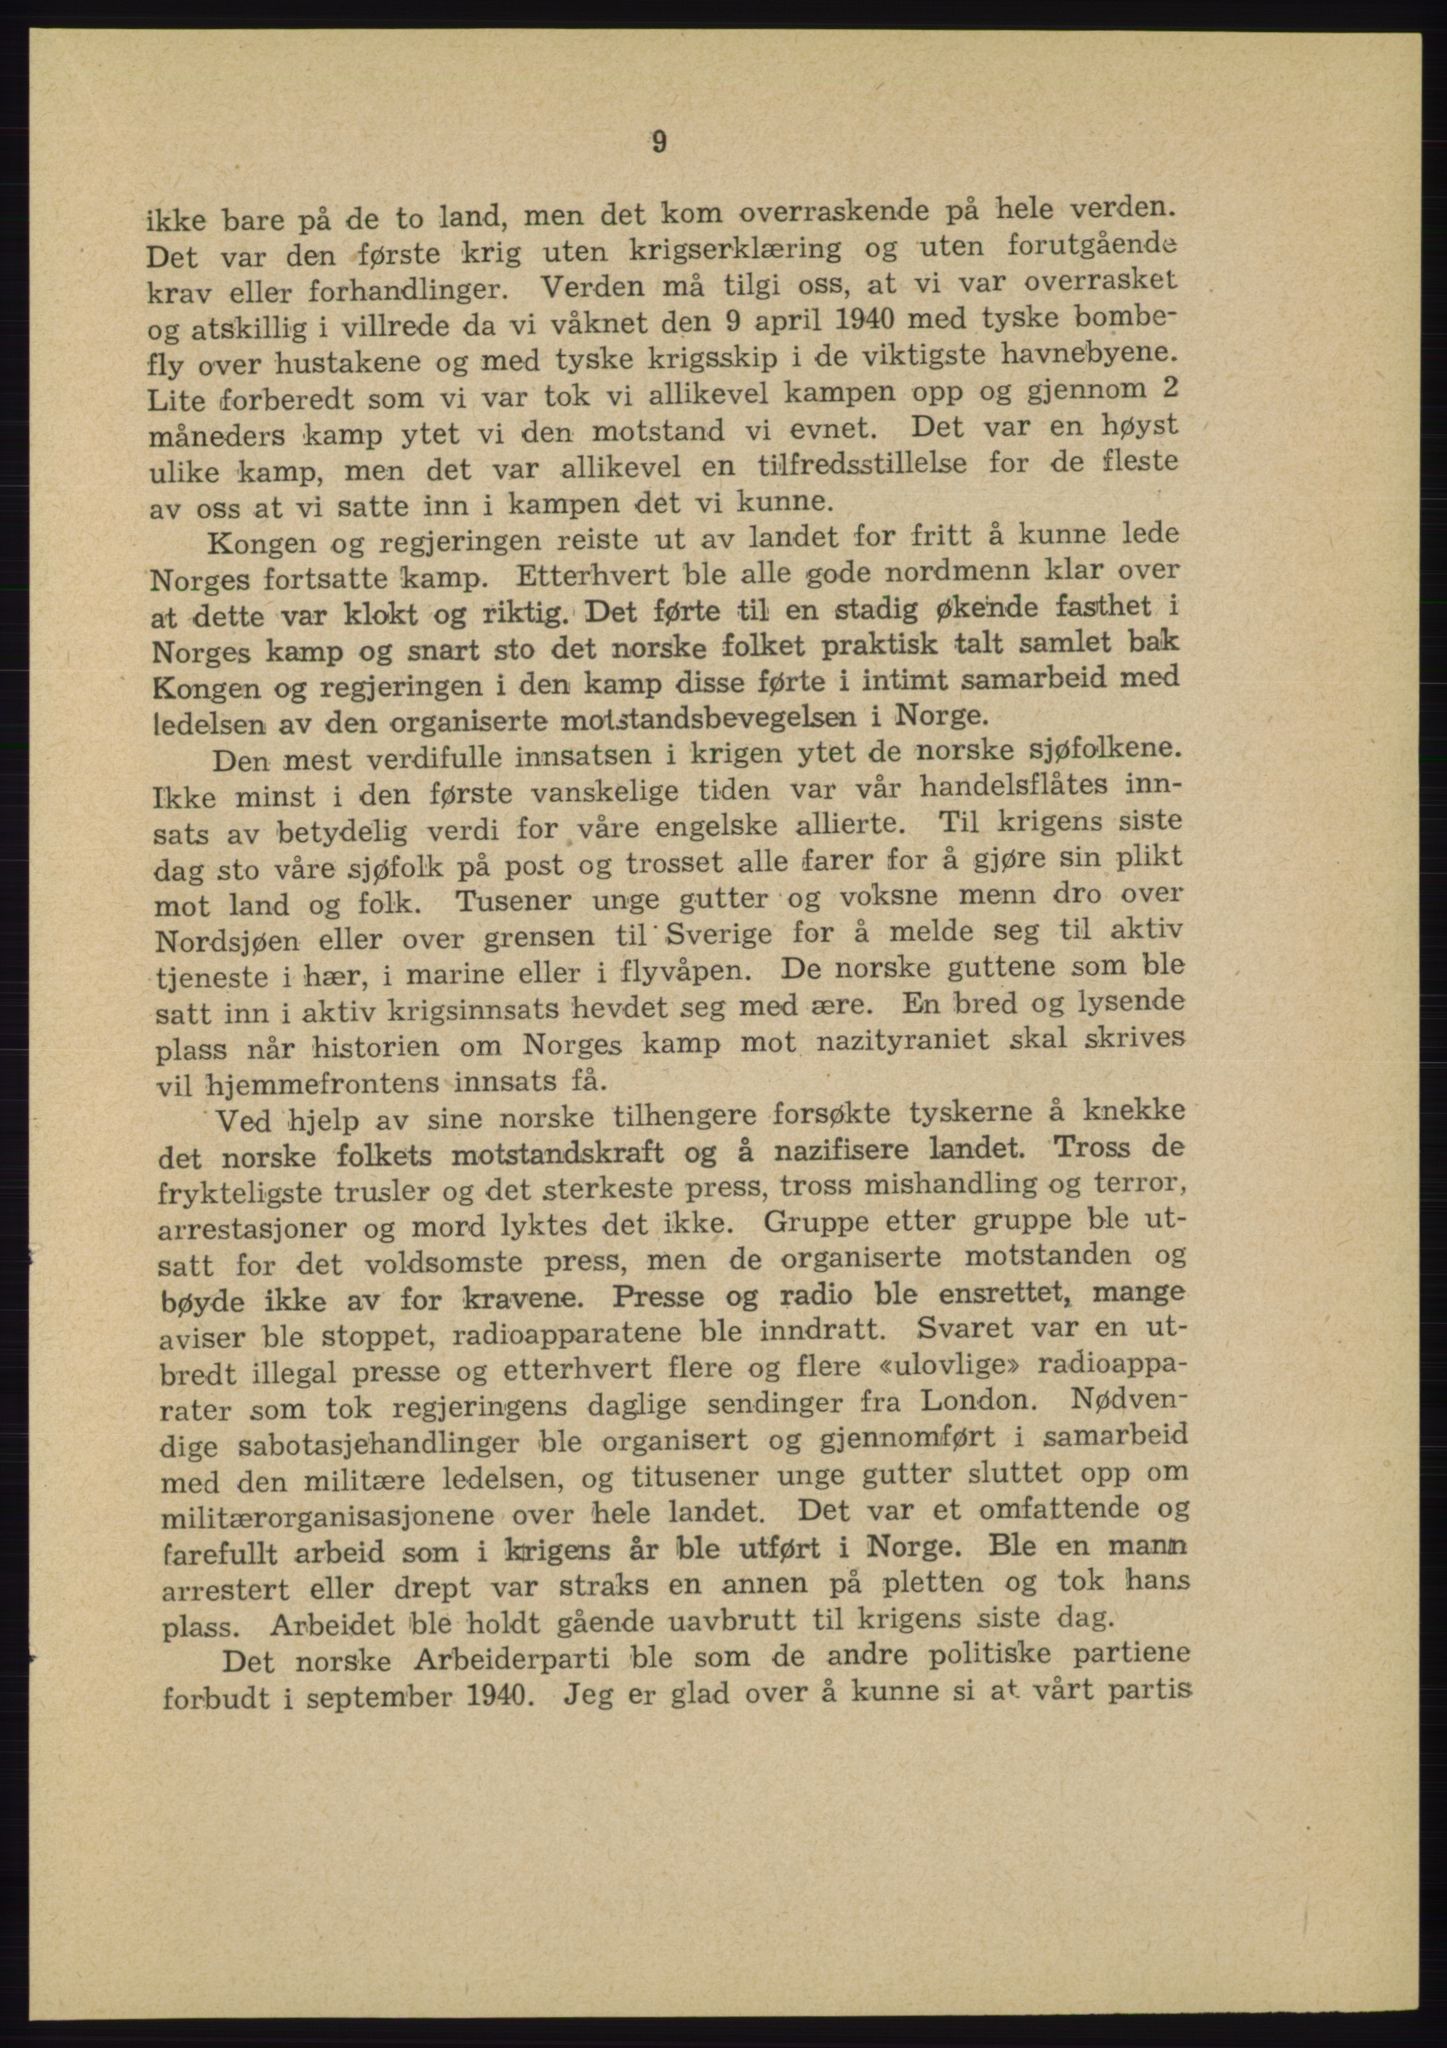 Det norske Arbeiderparti - publikasjoner, AAB/-/-/-: Protokoll over forhandlingene på landsmøtet 31. august og 1.-2. september 1945, 1945, p. 9